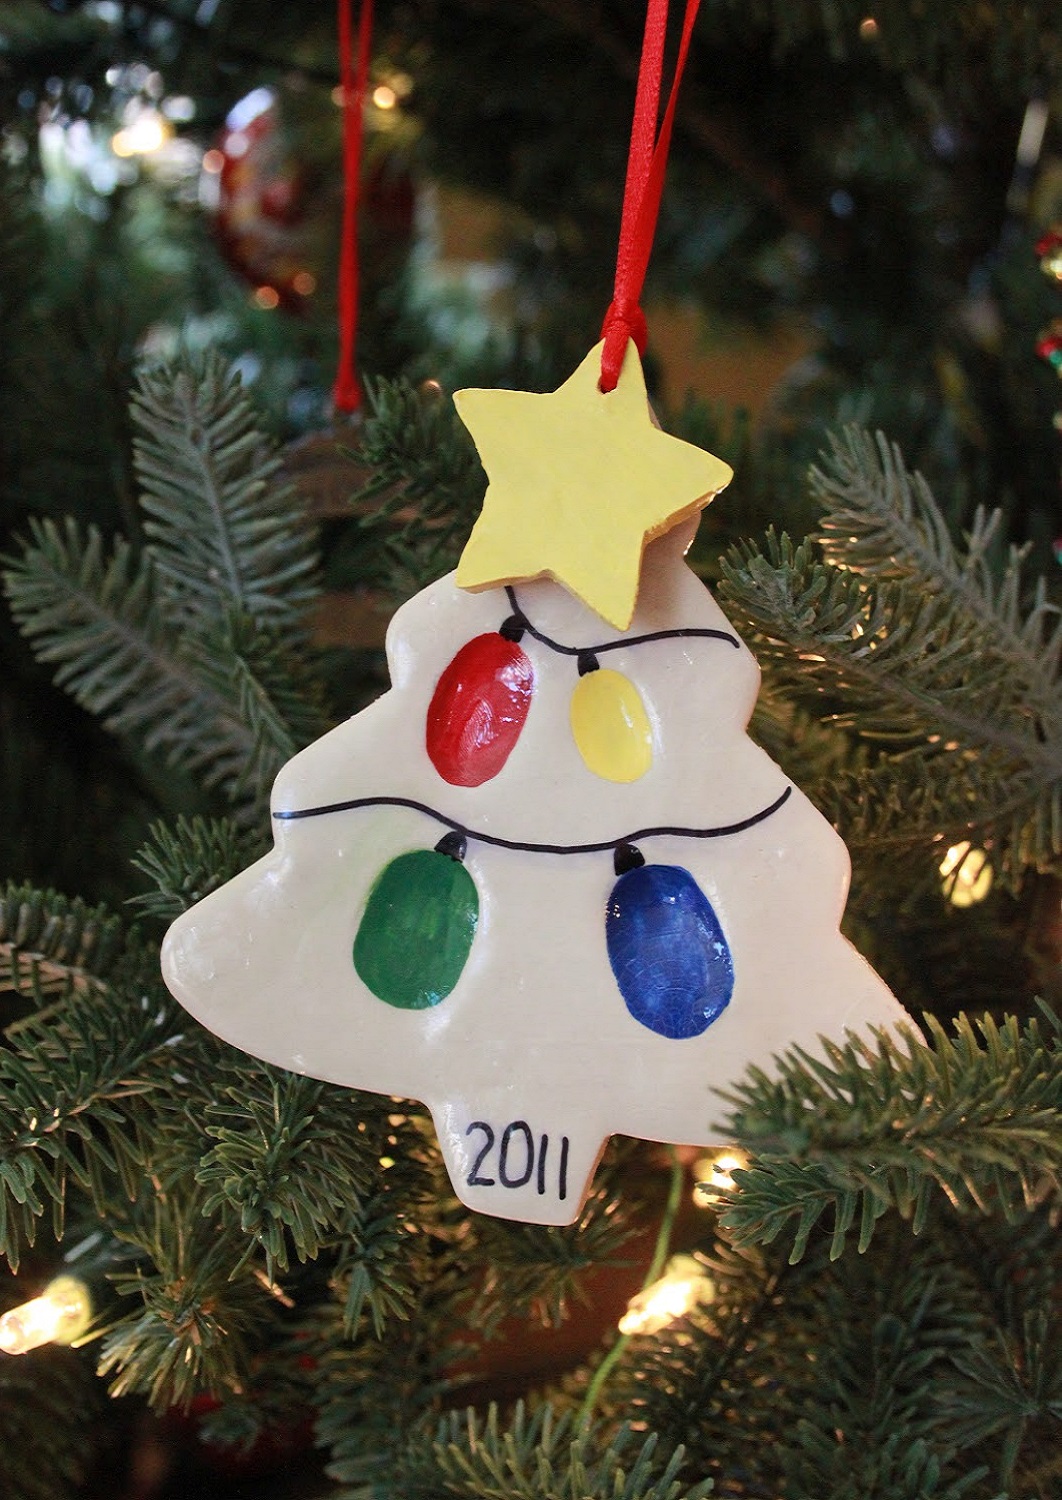 Thumbprint Christmas tree ornament ⋆ Homemade Christmas Ornaments Reindeer Handprint Ornament